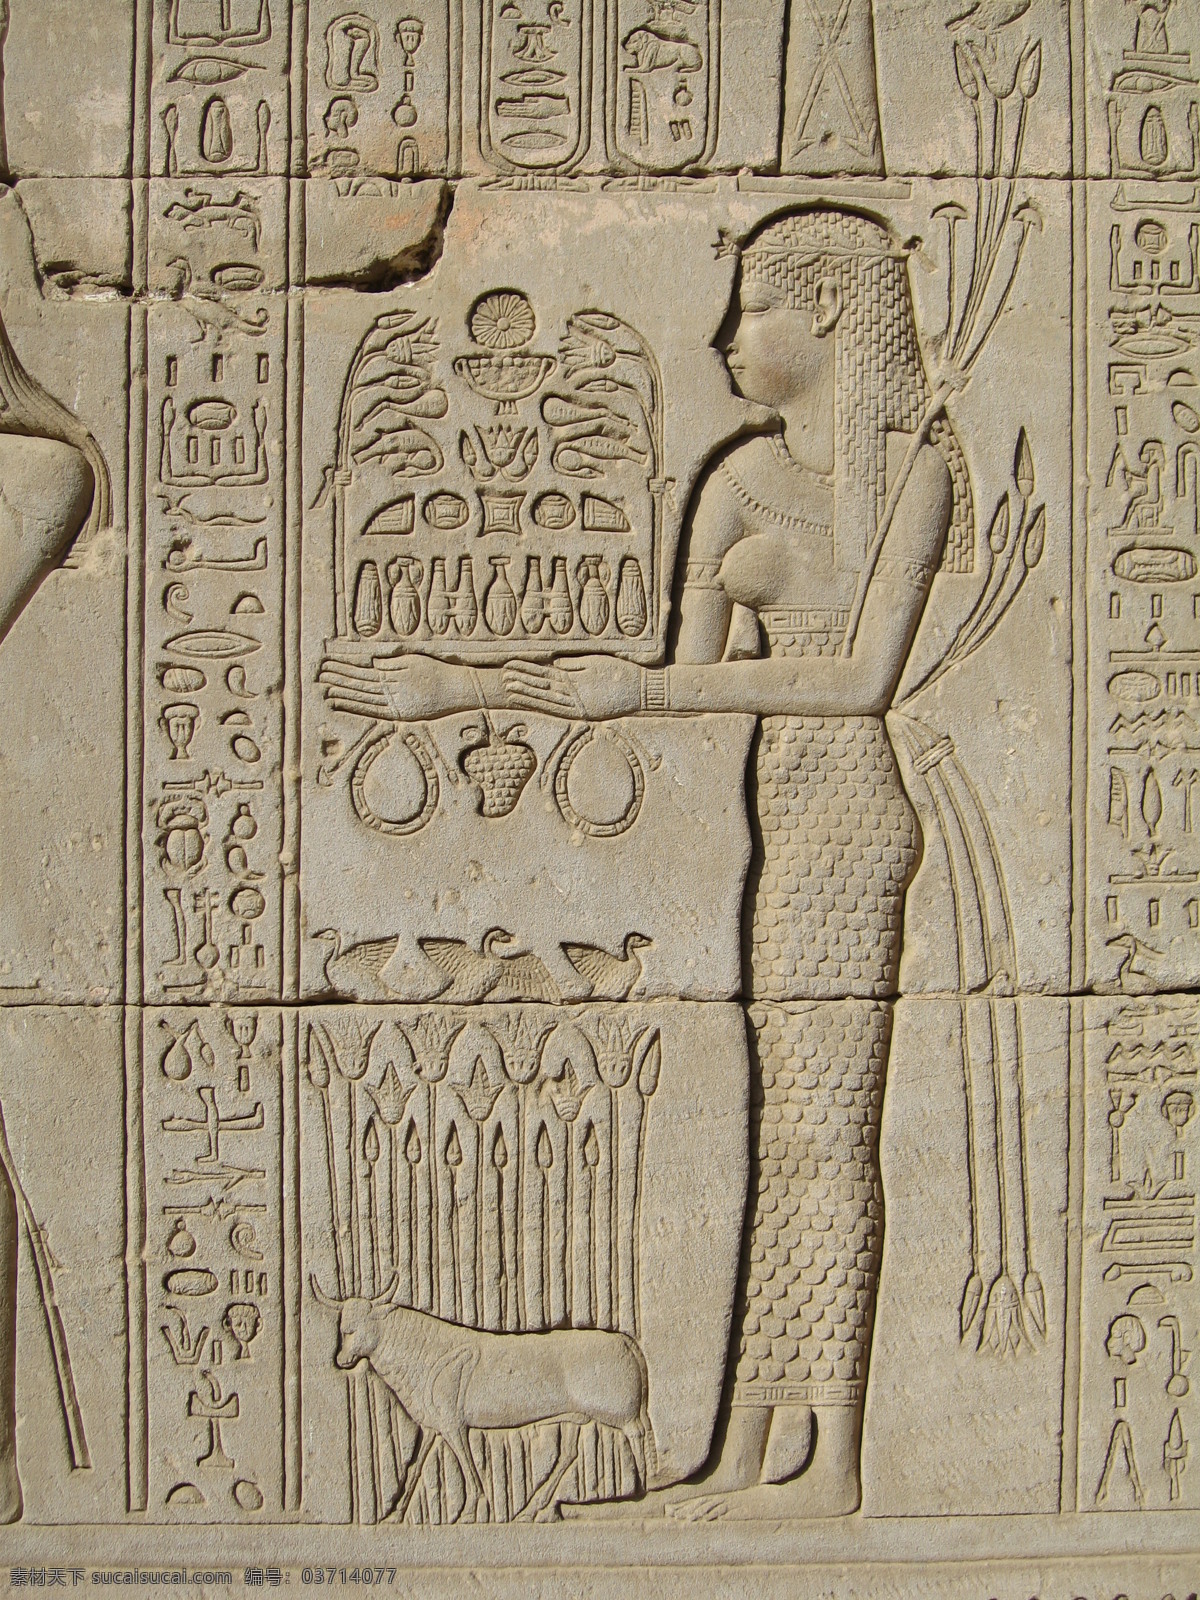 埃及壁画 壁画 埃及 埃及风景 图案 文字 古文字 古文明 埃及文化 古埃及文明 埃及文字 石刻 石雕 雕刻 罗马 古罗马 非洲 人物 人物雕刻 国外旅游 旅游摄影